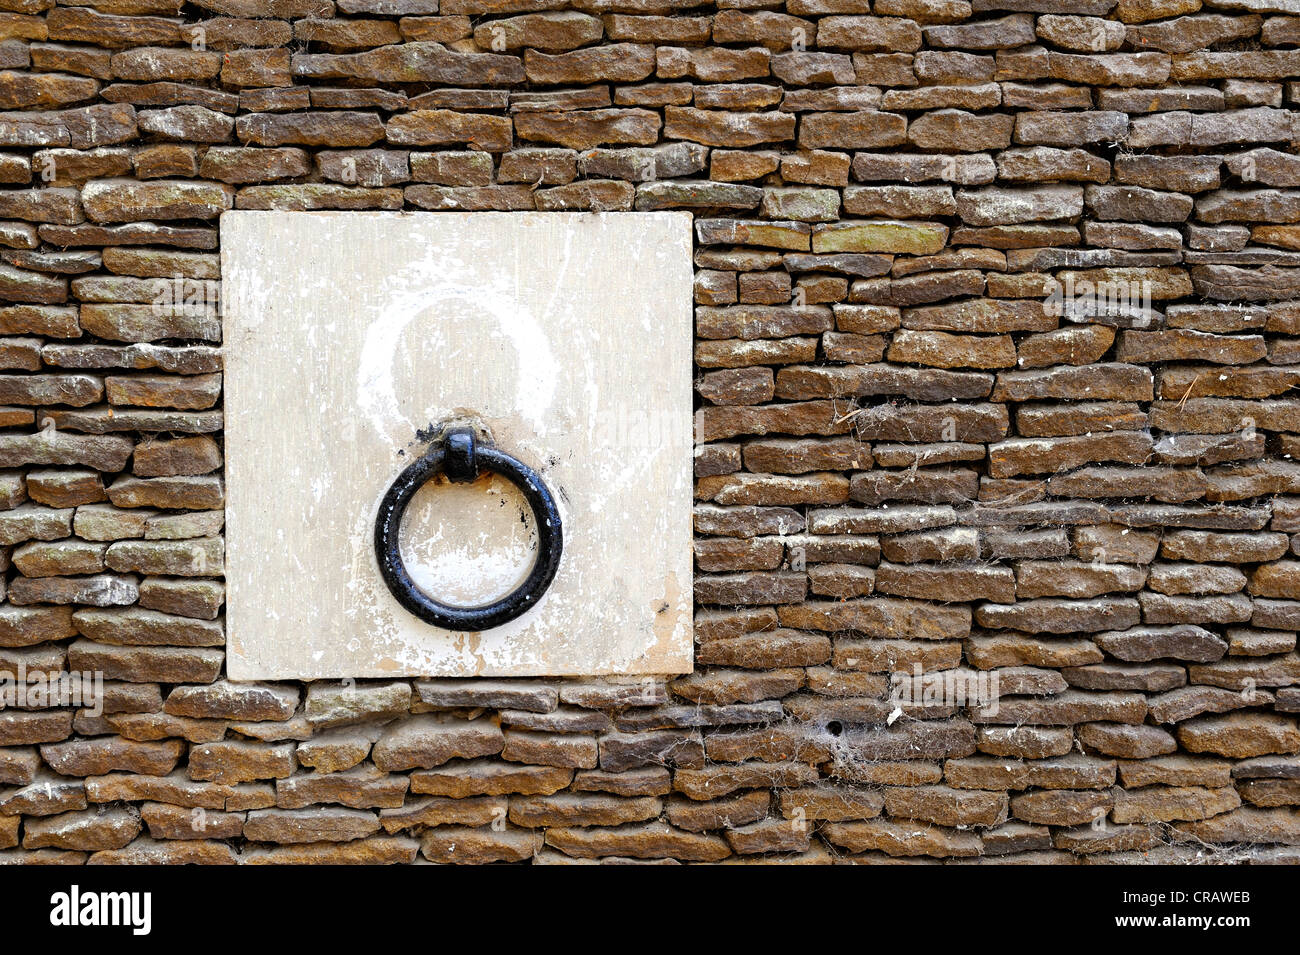 Anello metallico montato in un blocco di calcare e cementato in un muro di pietra Foto Stock